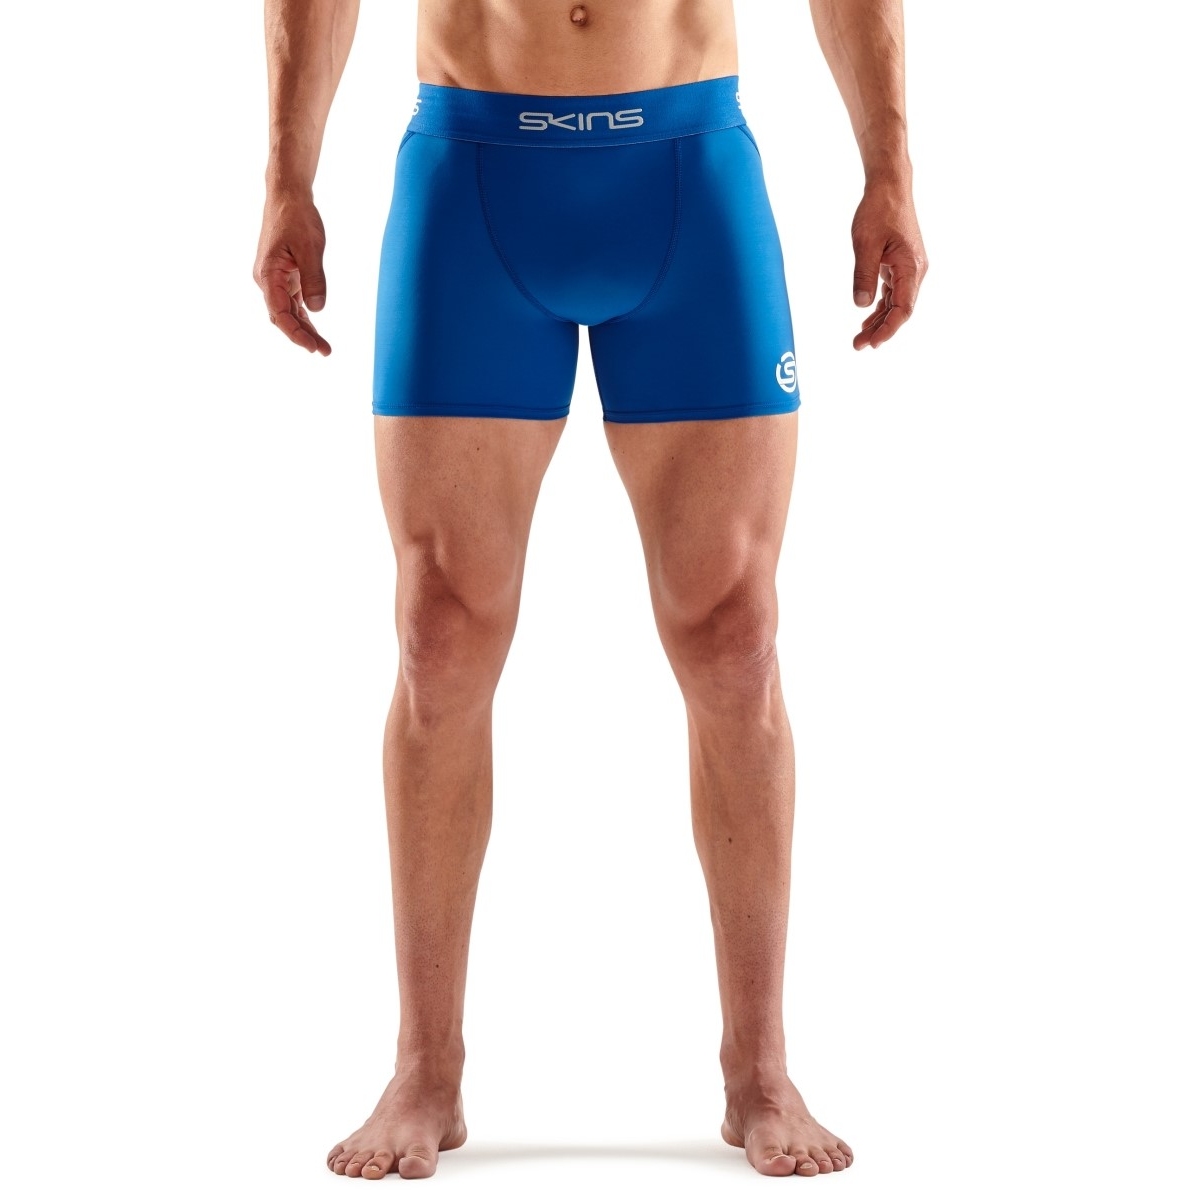 Produktbild von SKINS 1-Series Fitness-Shorts - Bright Blue